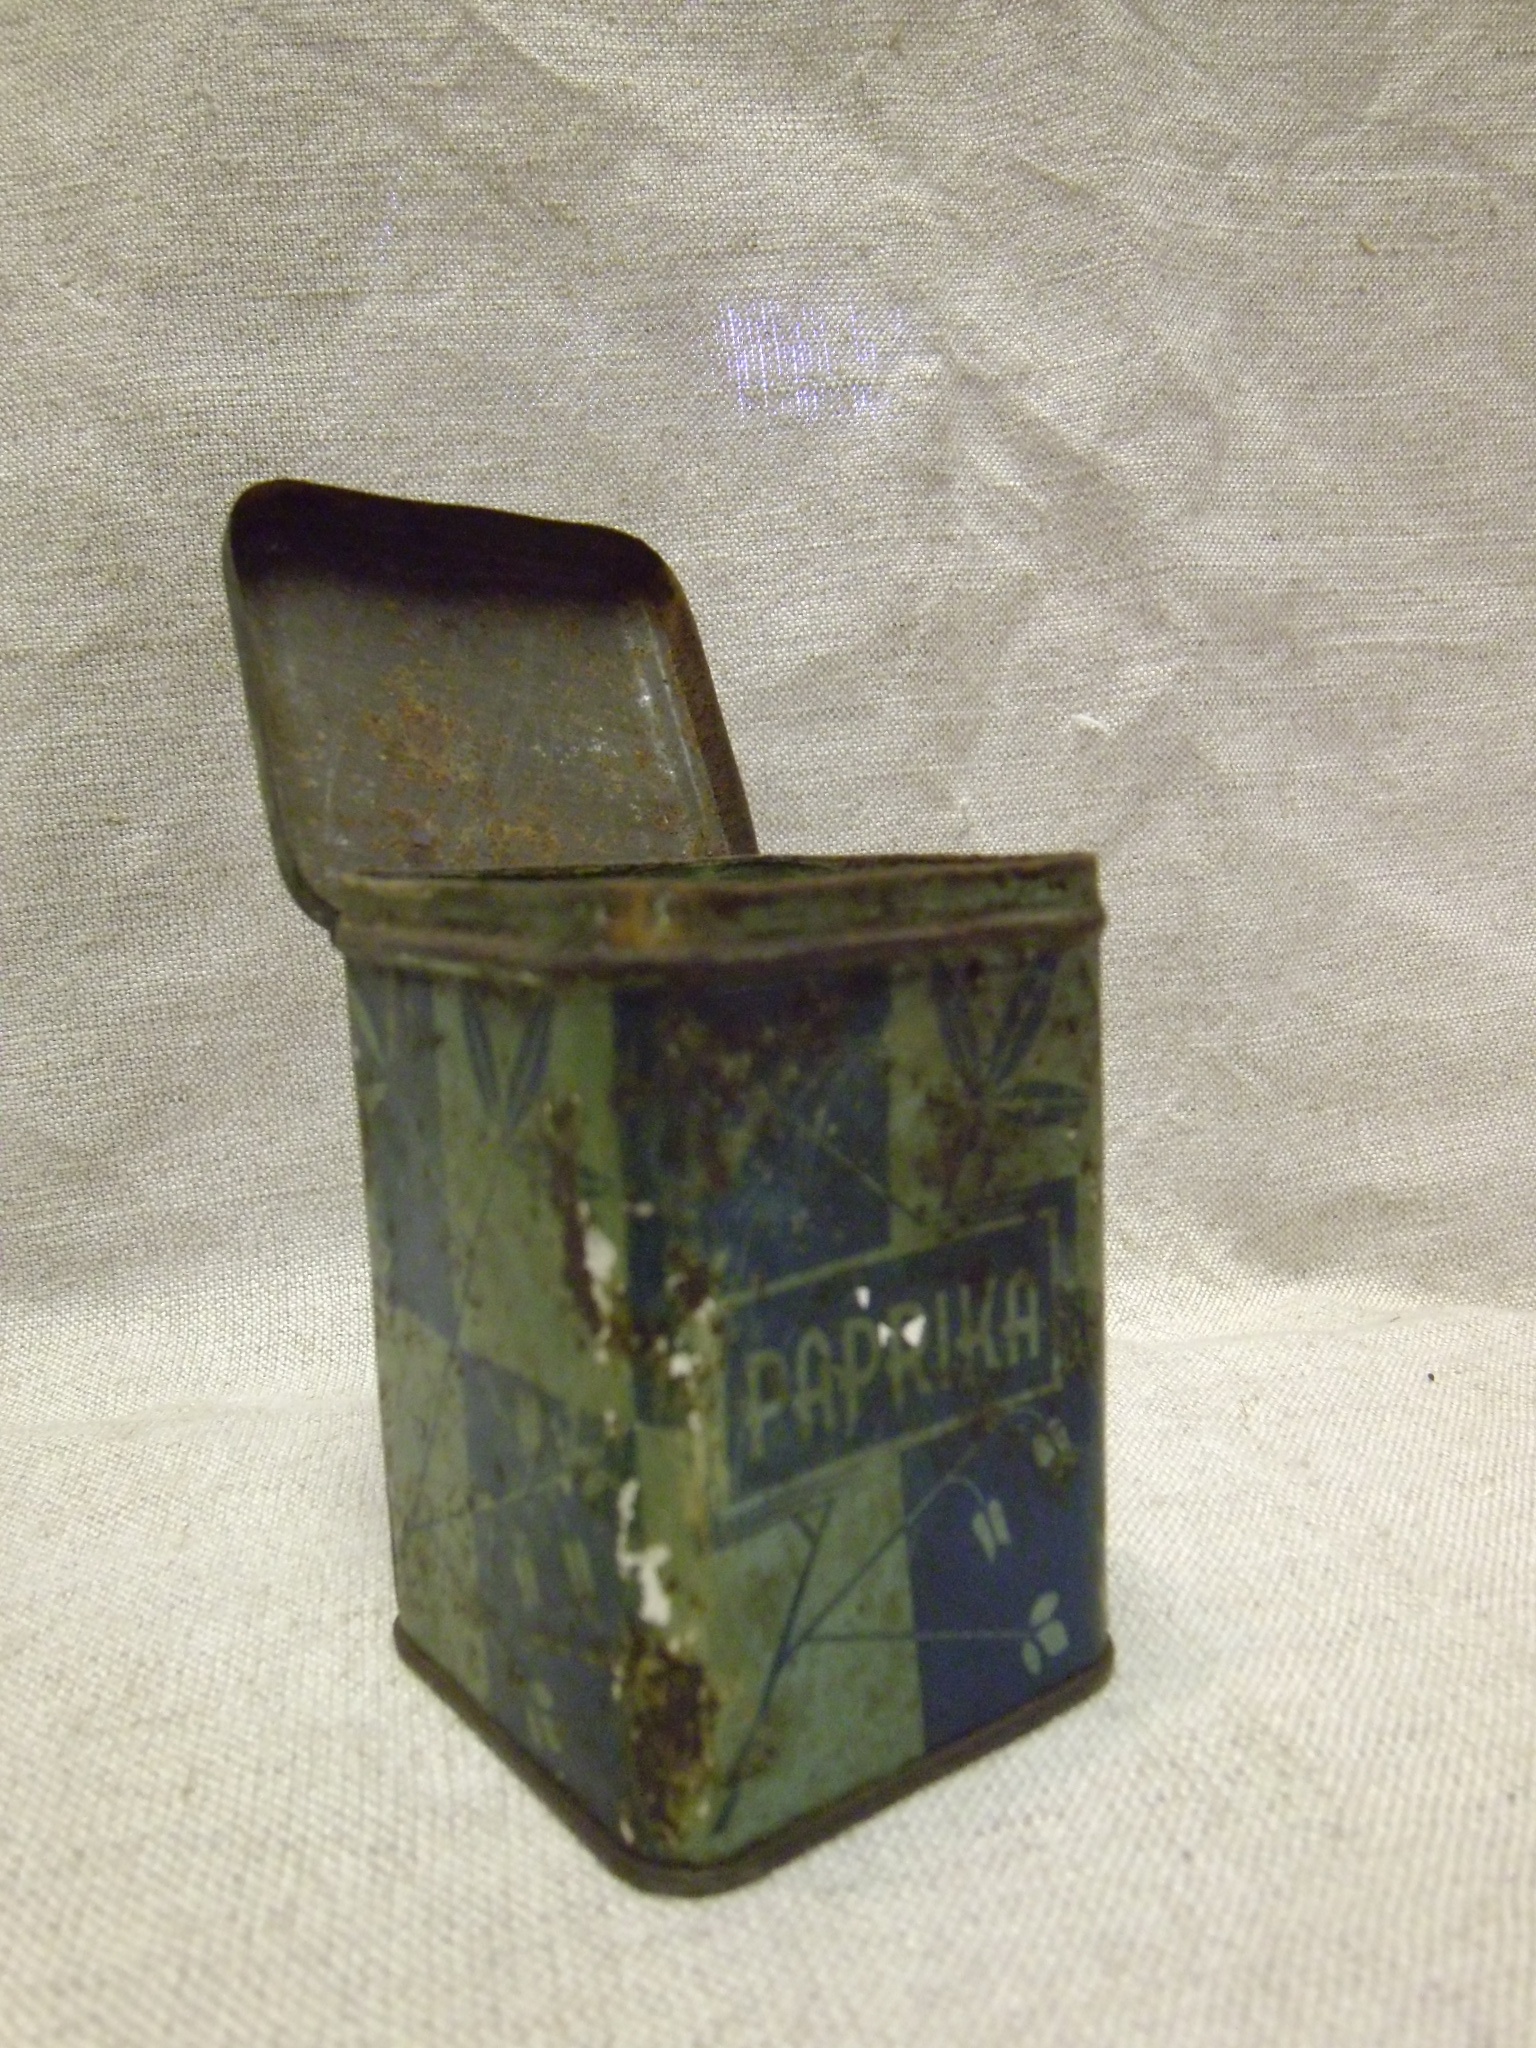 Élelmiszeres doboz, téglatest, Paprikás fűszeres doboz fémből, kívül festett (Tomory Lajos Pedagógiai és Helytörténeti Gyűjtemény CC BY-NC-SA)